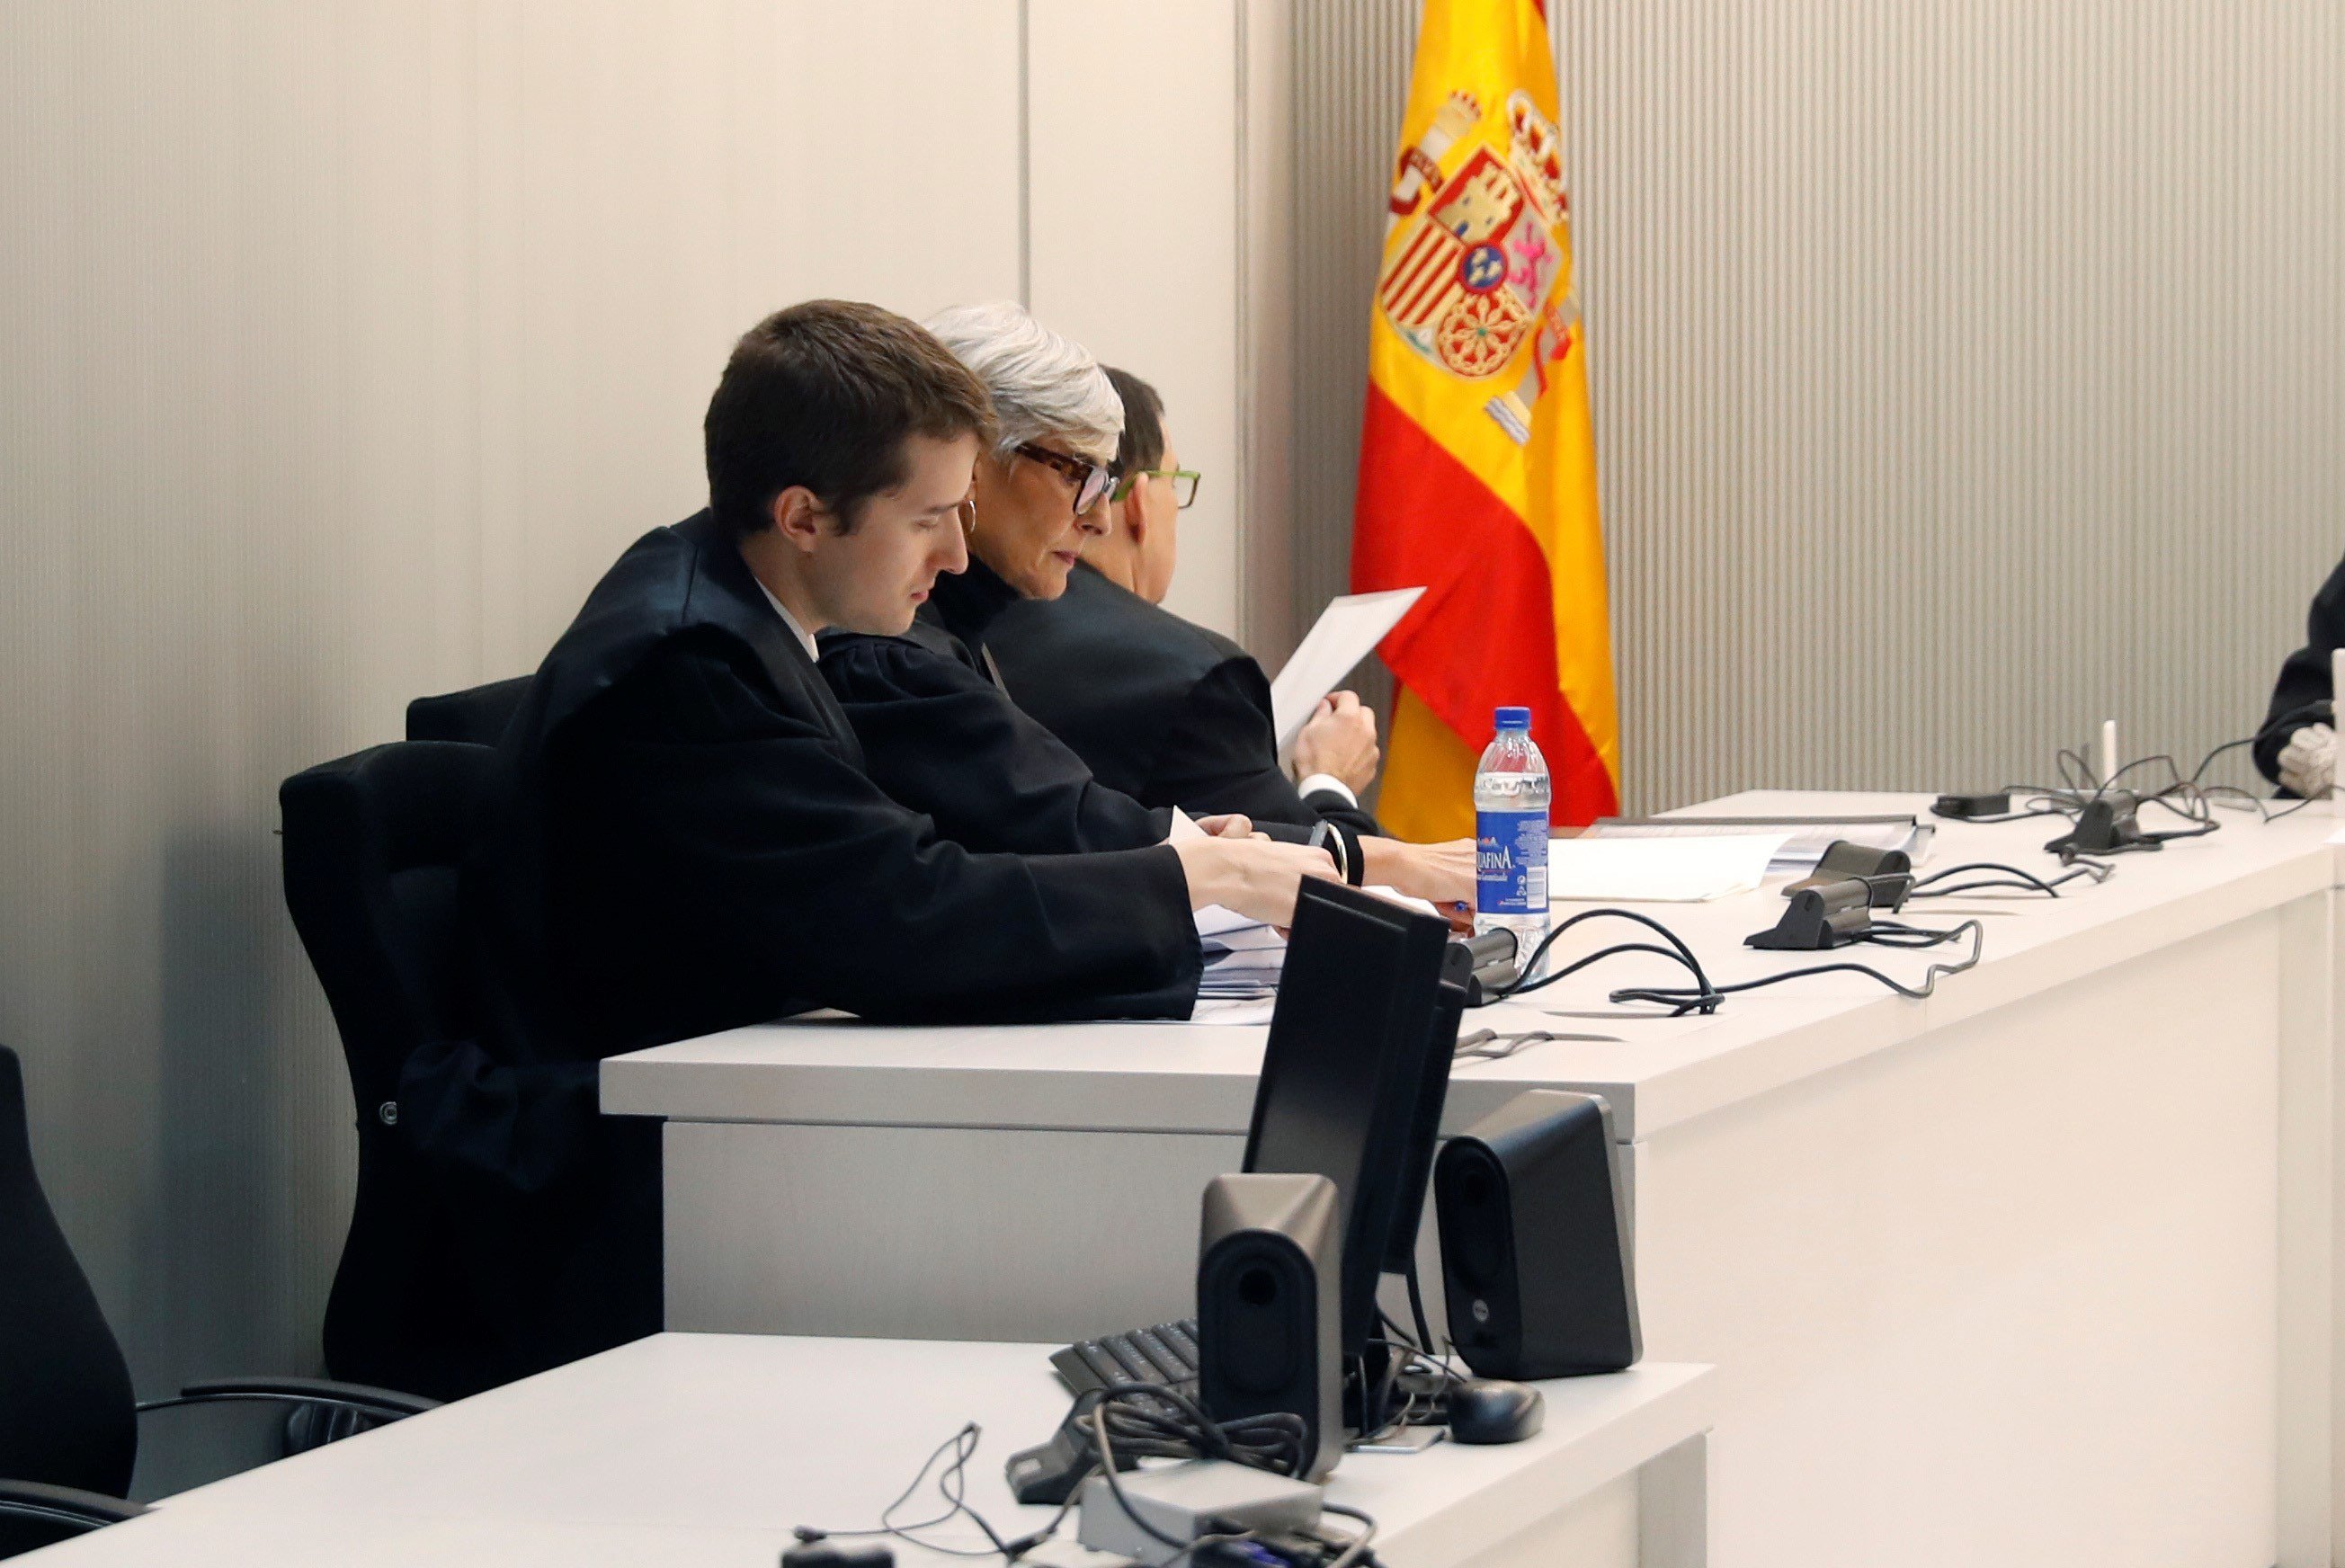 La fiscalía rectifica y dice ahora que no duda de la "profesionalidad" de los jueces de Catalunya